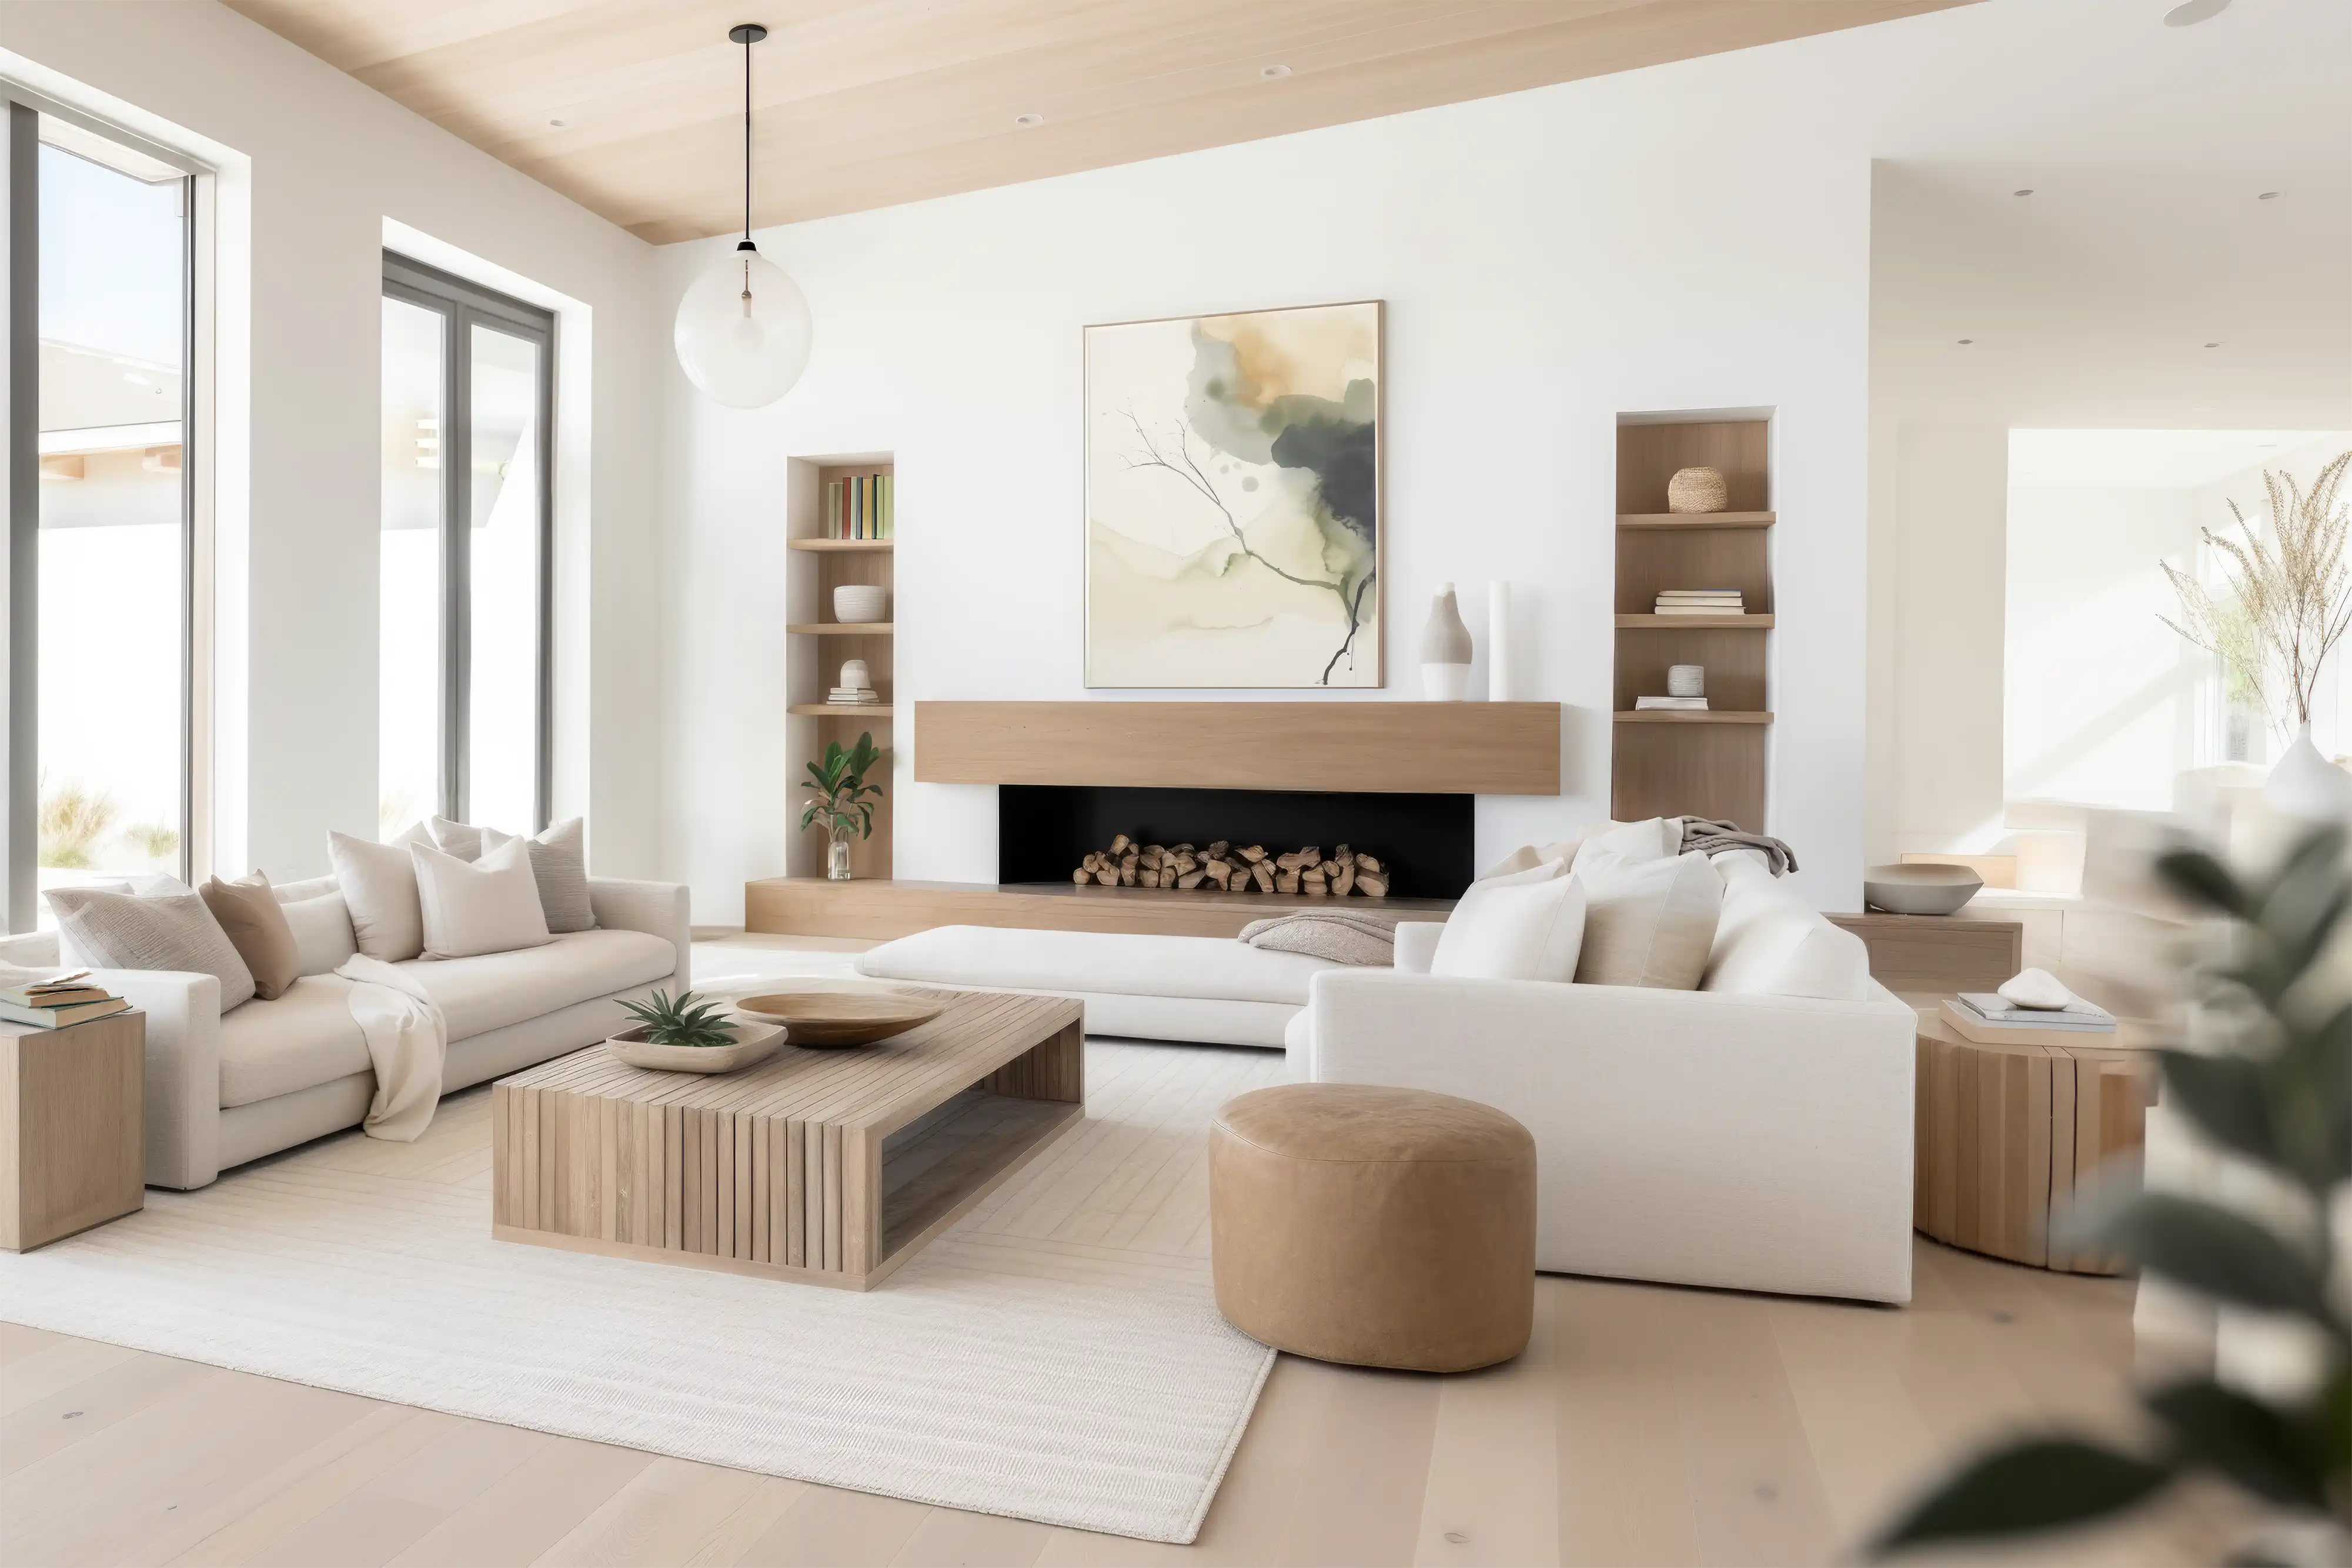 Un salon moderne avec un foyer, une fenêtre avec une vue sur les arbres et une peinture abstraite, intérieur signé Sarah Brown Design